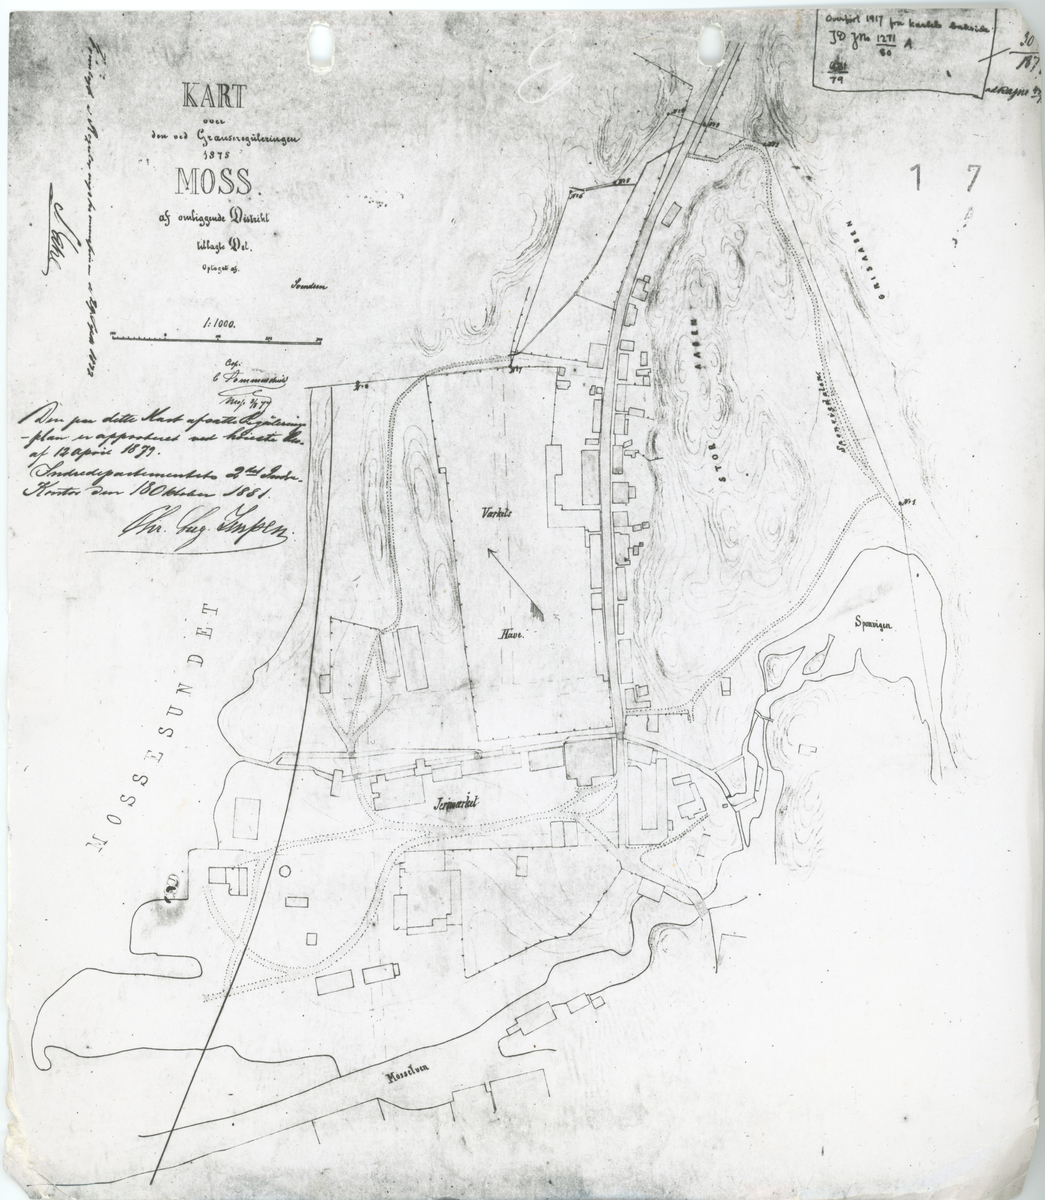 Fotokopi av gammelt kart over Jernverket.
Kartet er utformet etter en rapport fra 1879.